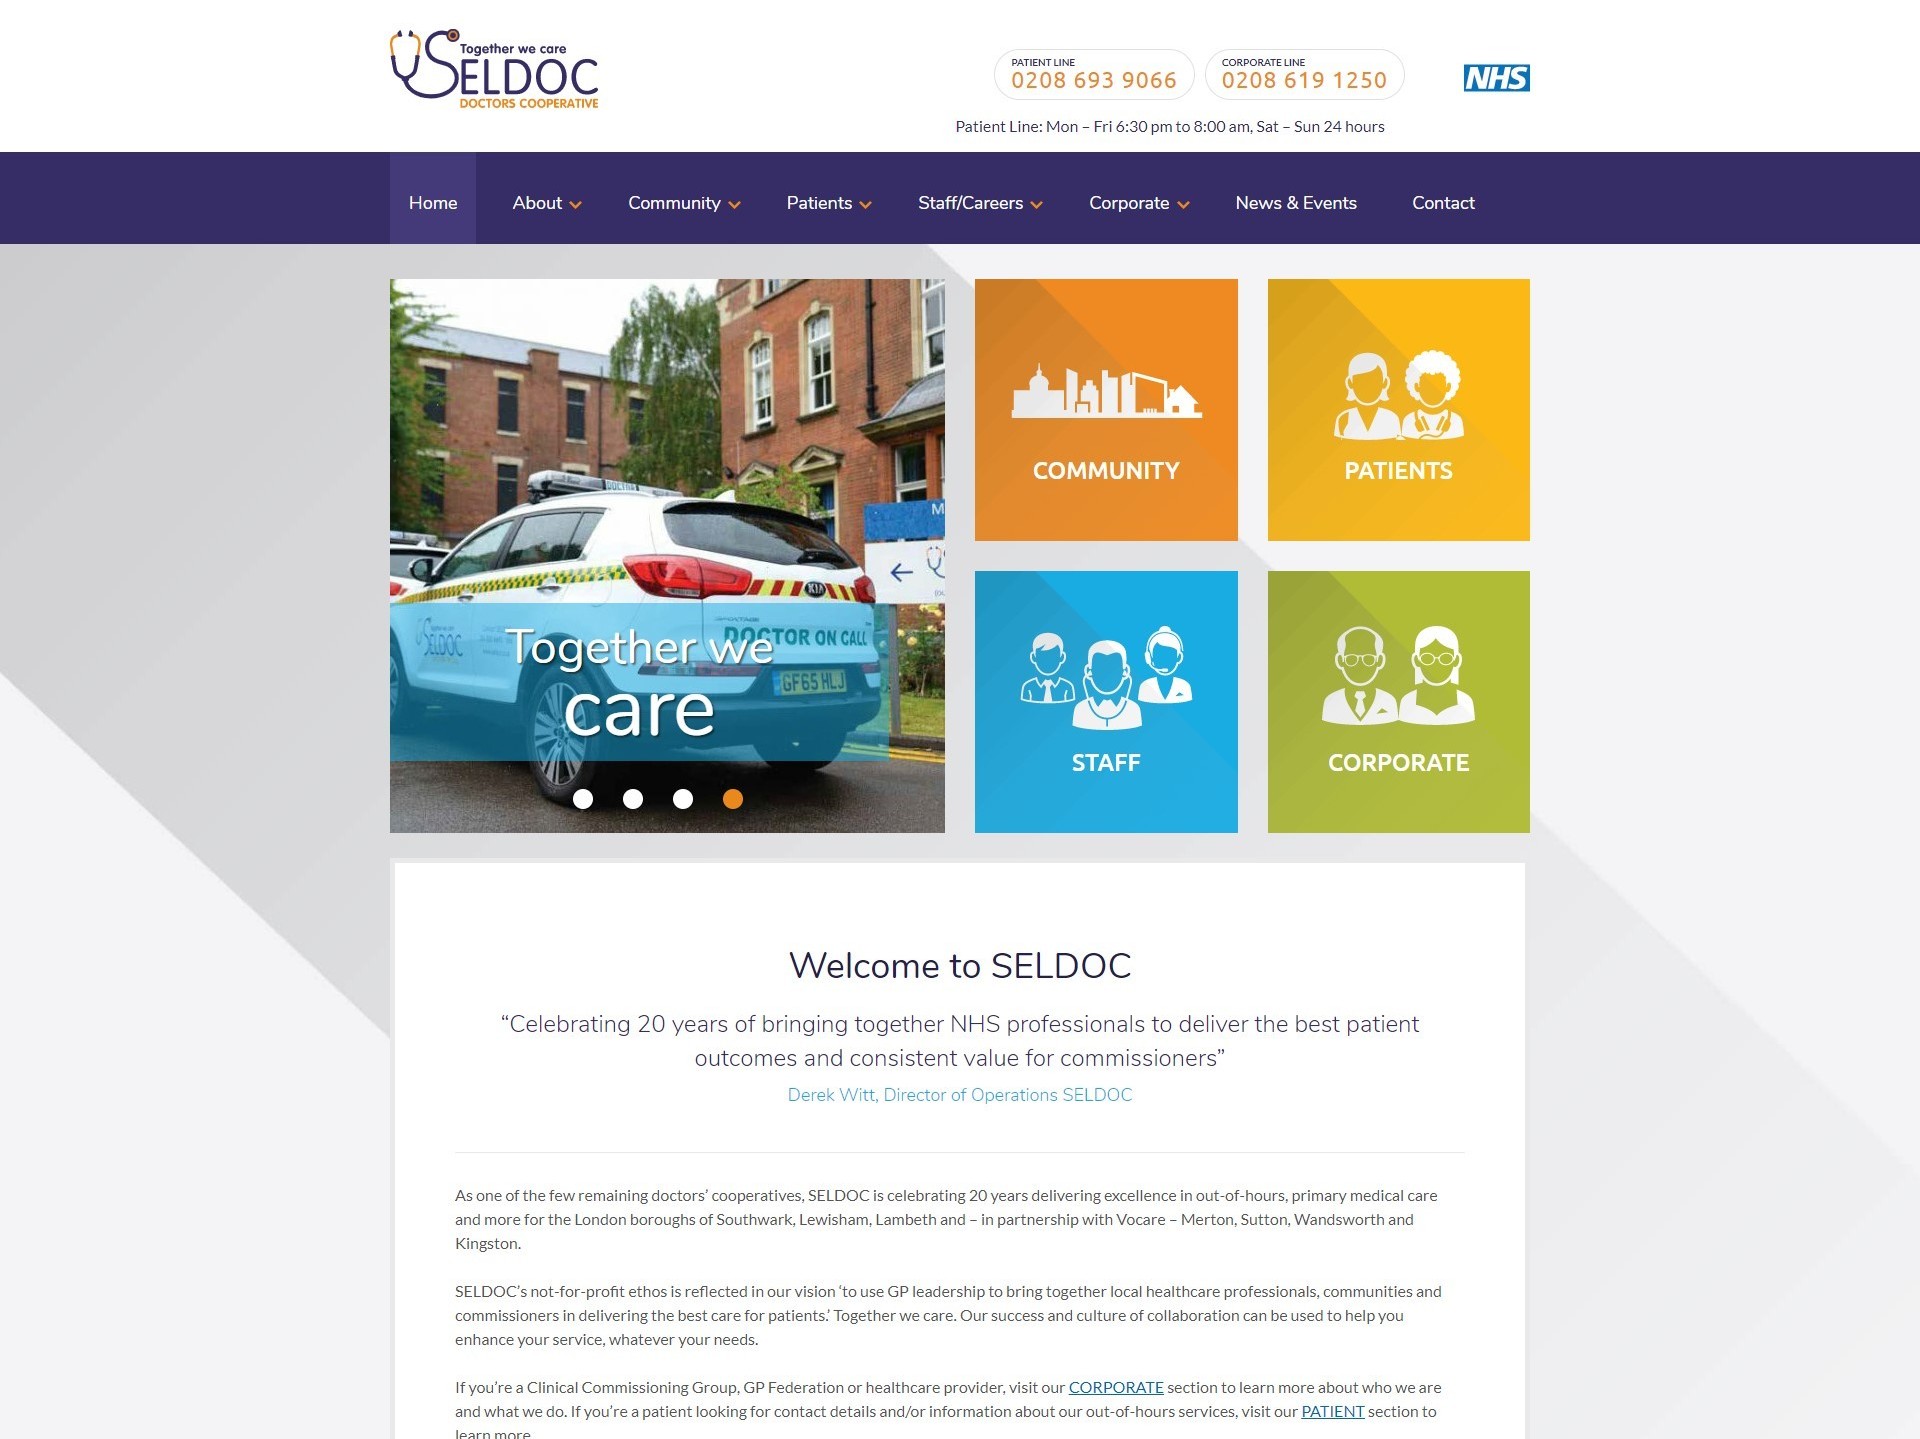 The before Seldoc website, displayed on desktop